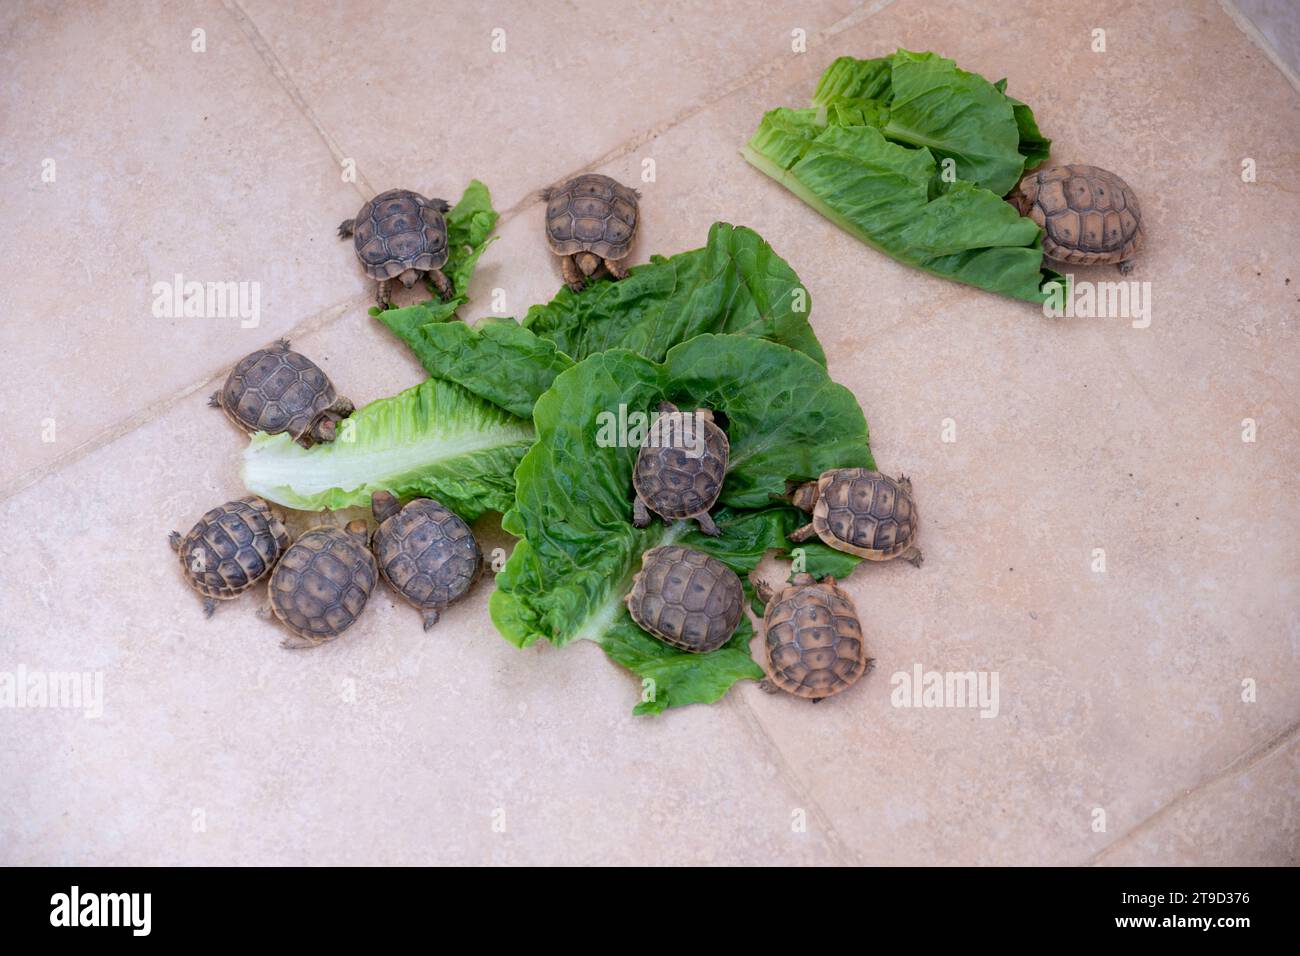 Petites turtelles mangeant de la laitue sur le sol Banque D'Images